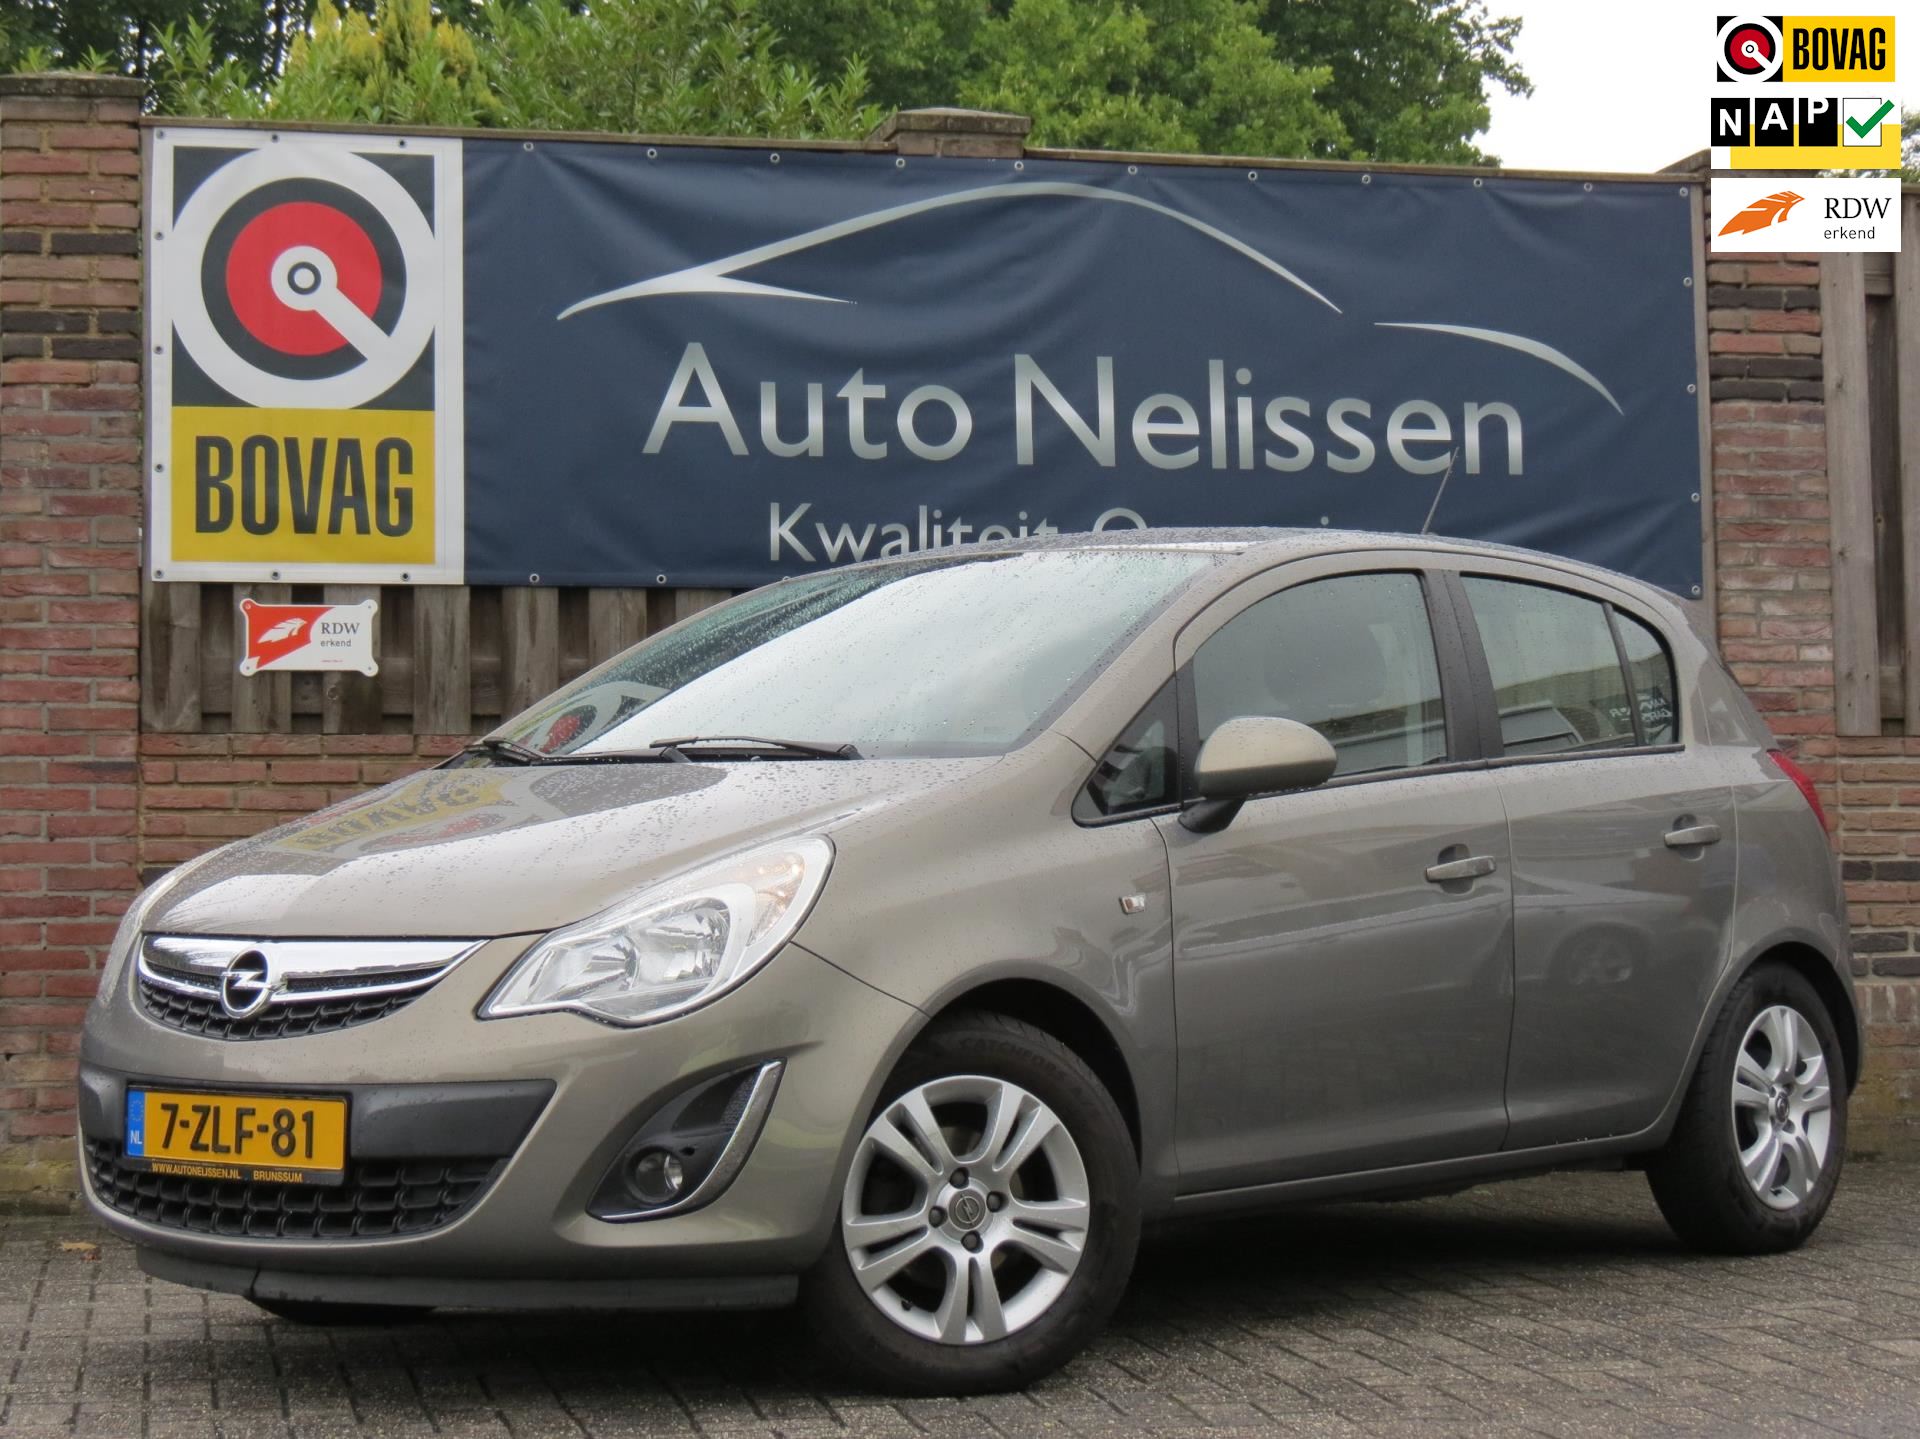 Opel Corsa occasion - Auto Nelissen